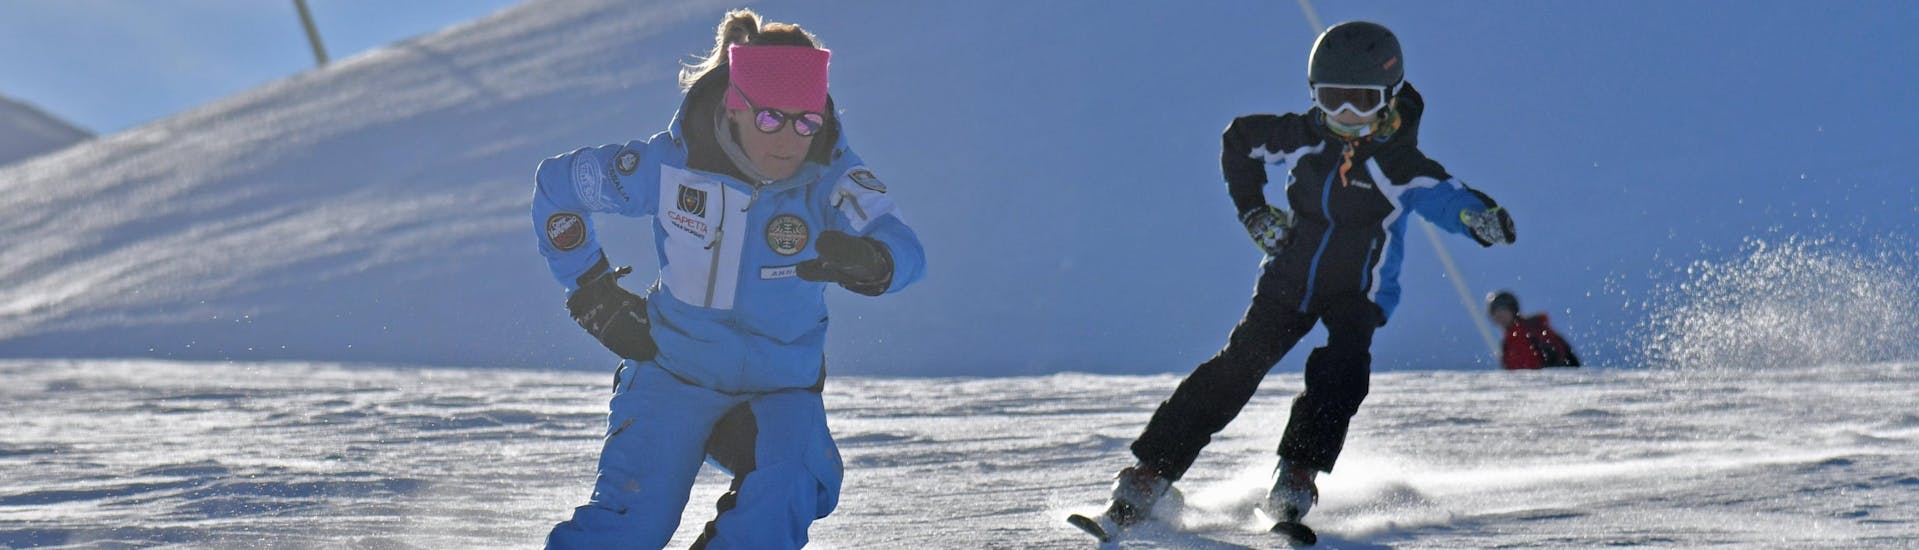 Skileraar en deelnemer trainen samen op de pistes van Prato Nevoso tijdens een van de Privé Skilessen voor Kinderen van alle niveaus.